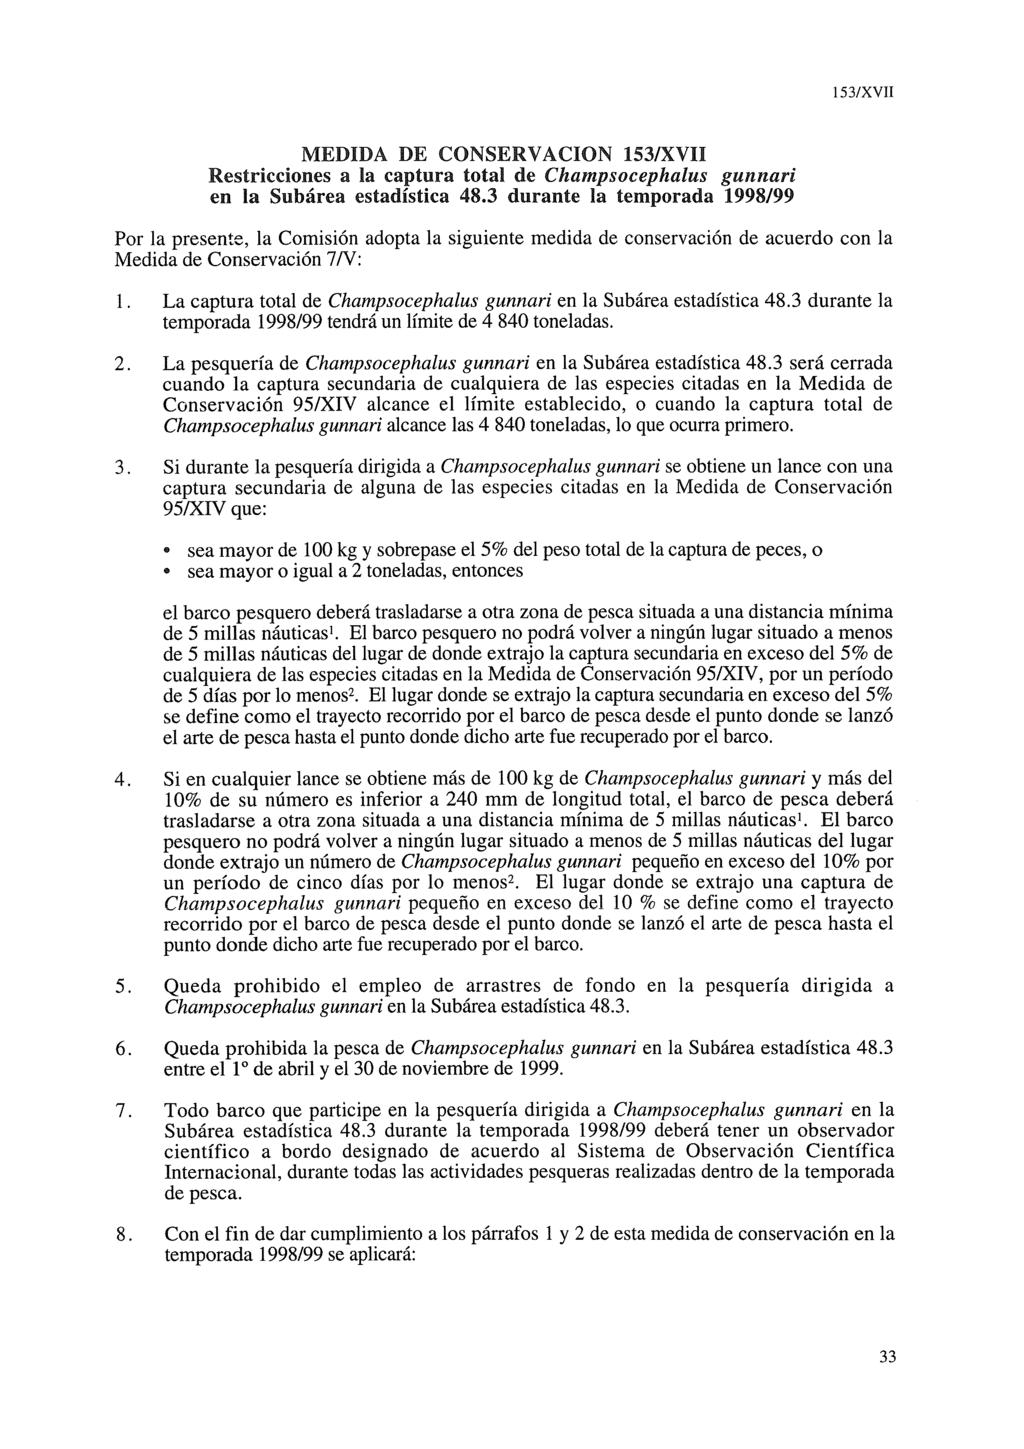 MEDIDA DE GONSERVACION 153lXVII Restricciones a la captura total de Champsocephalus gunnari en. la Subárea estadística 48.